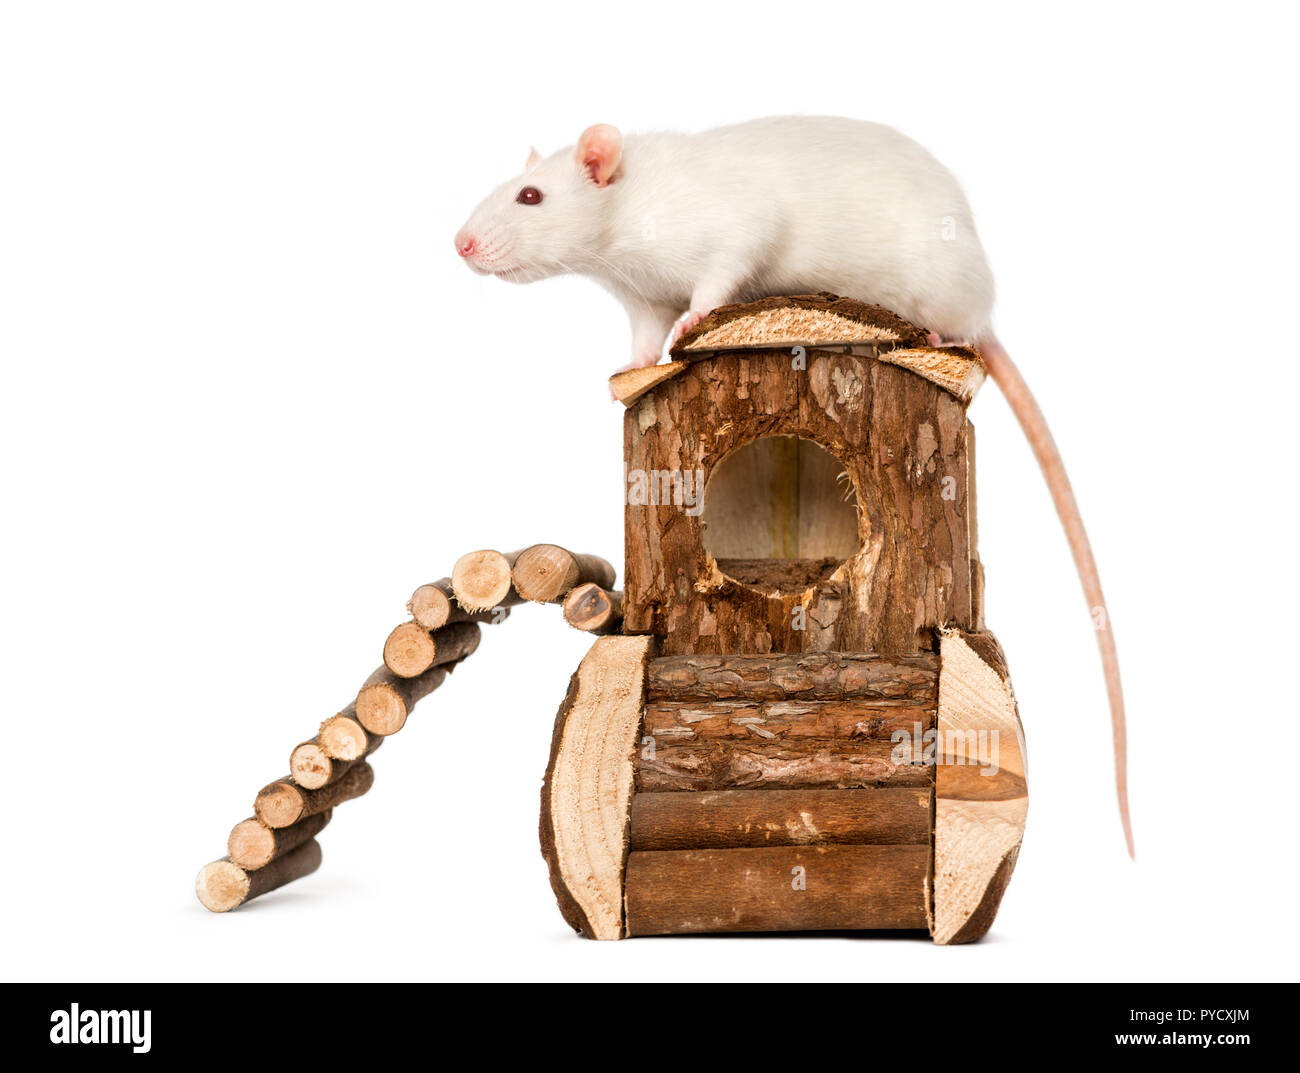 Di ratto (8 mesi) in piedi su un mouse house, isolato su bianco Foto Stock